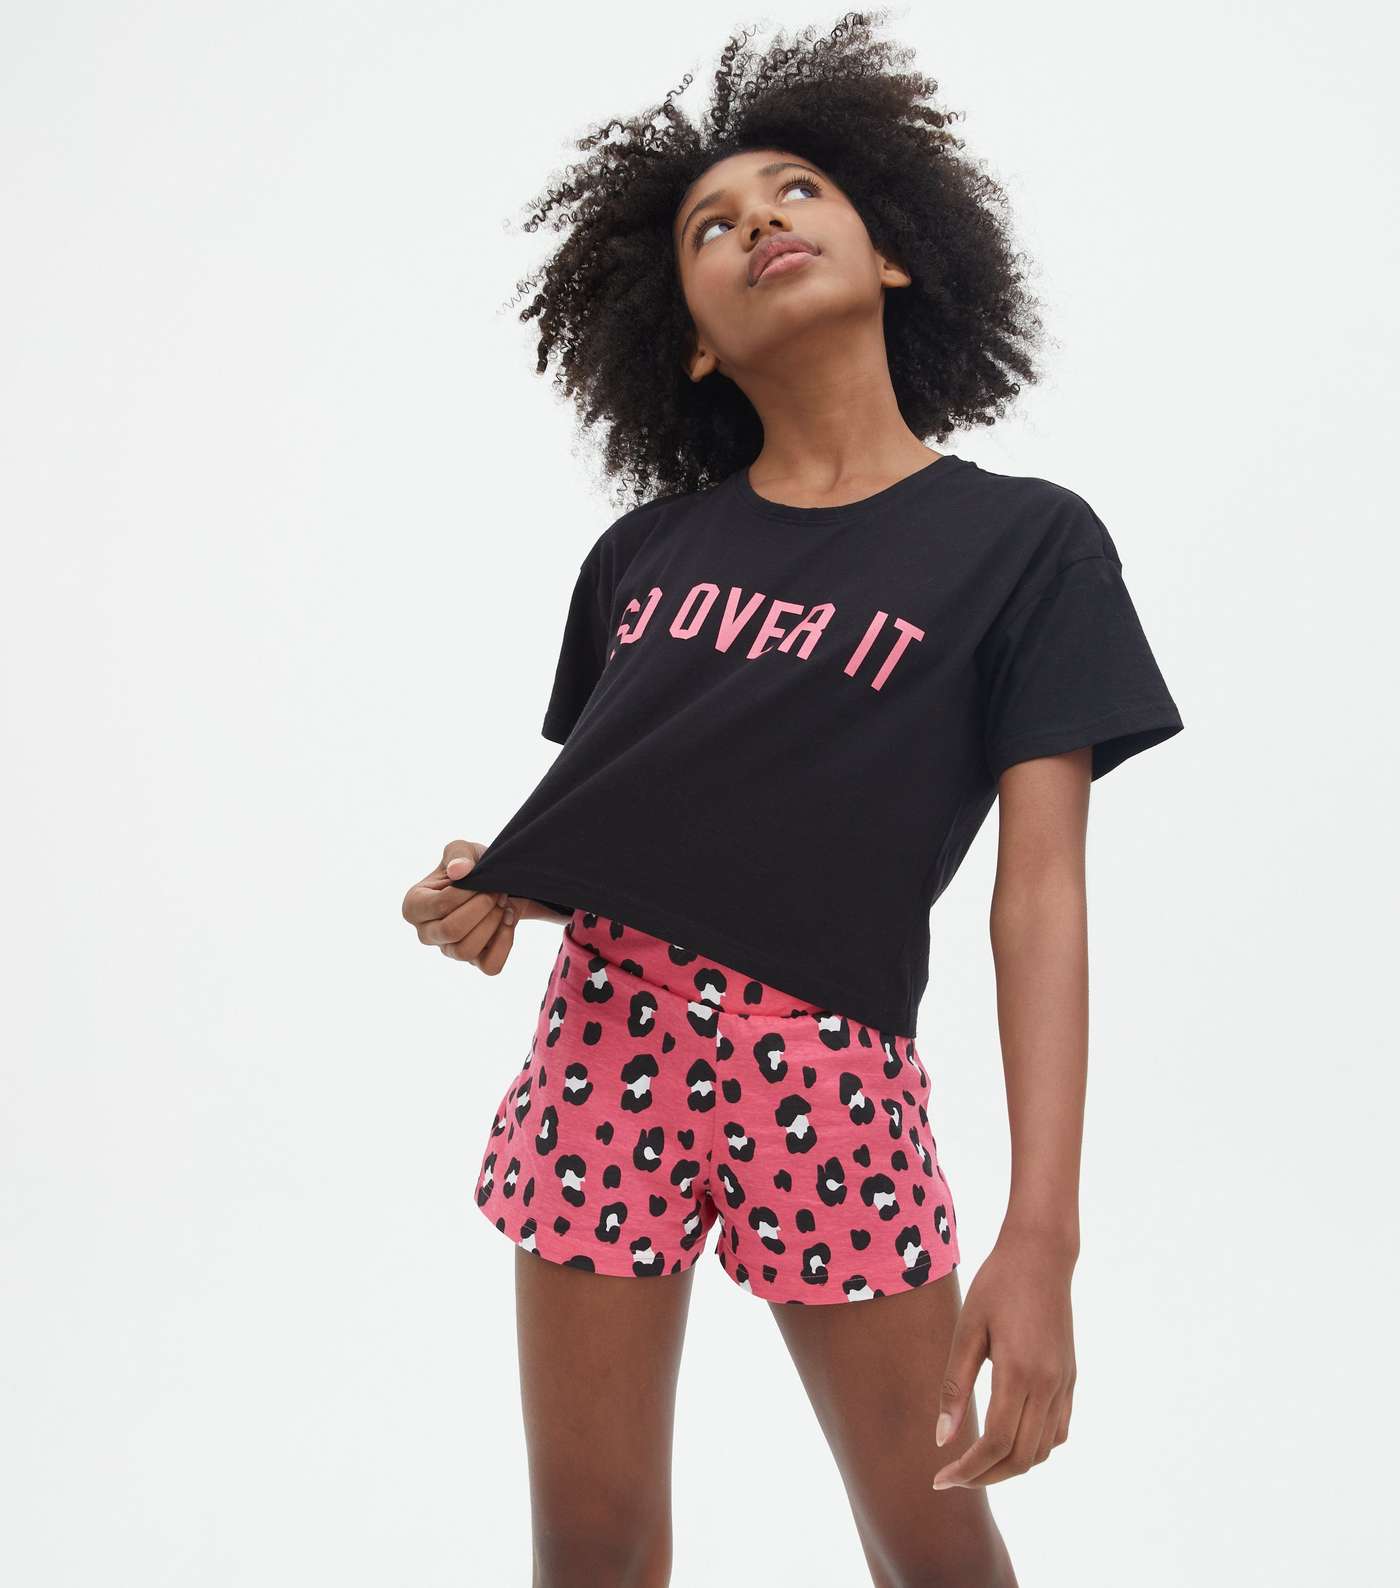 Girls 2 Pack Black Short Pyjama Sets with Leopard Print Image 2